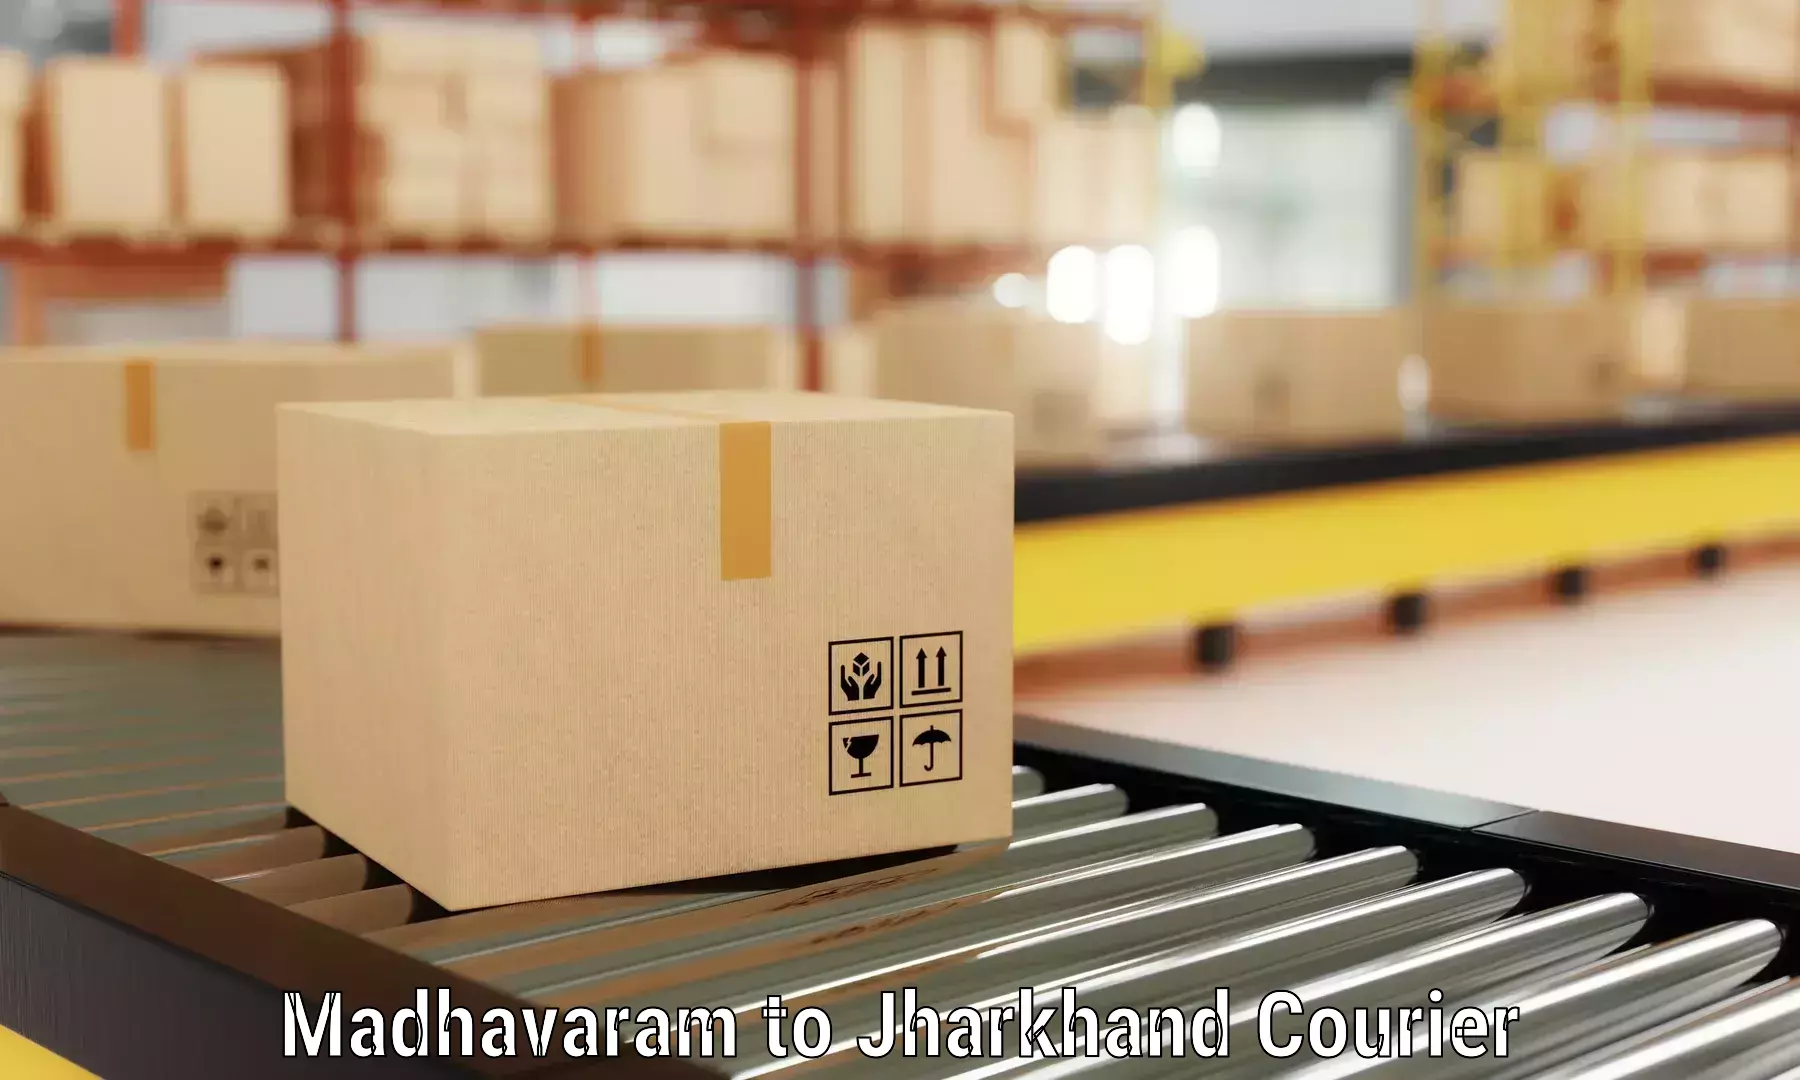 Professional moving strategies Madhavaram to Chandankiyari